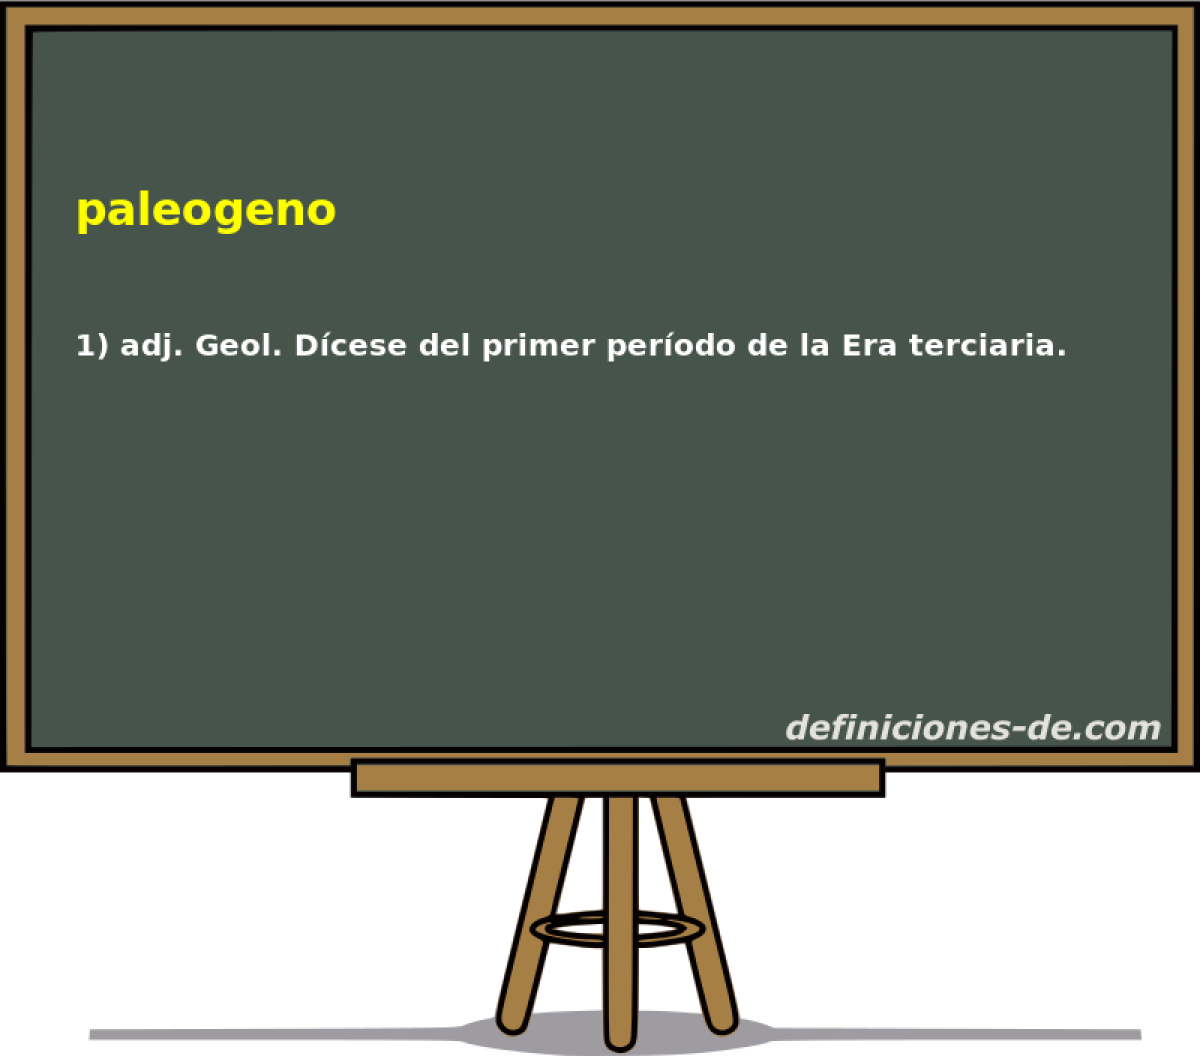 paleogeno 